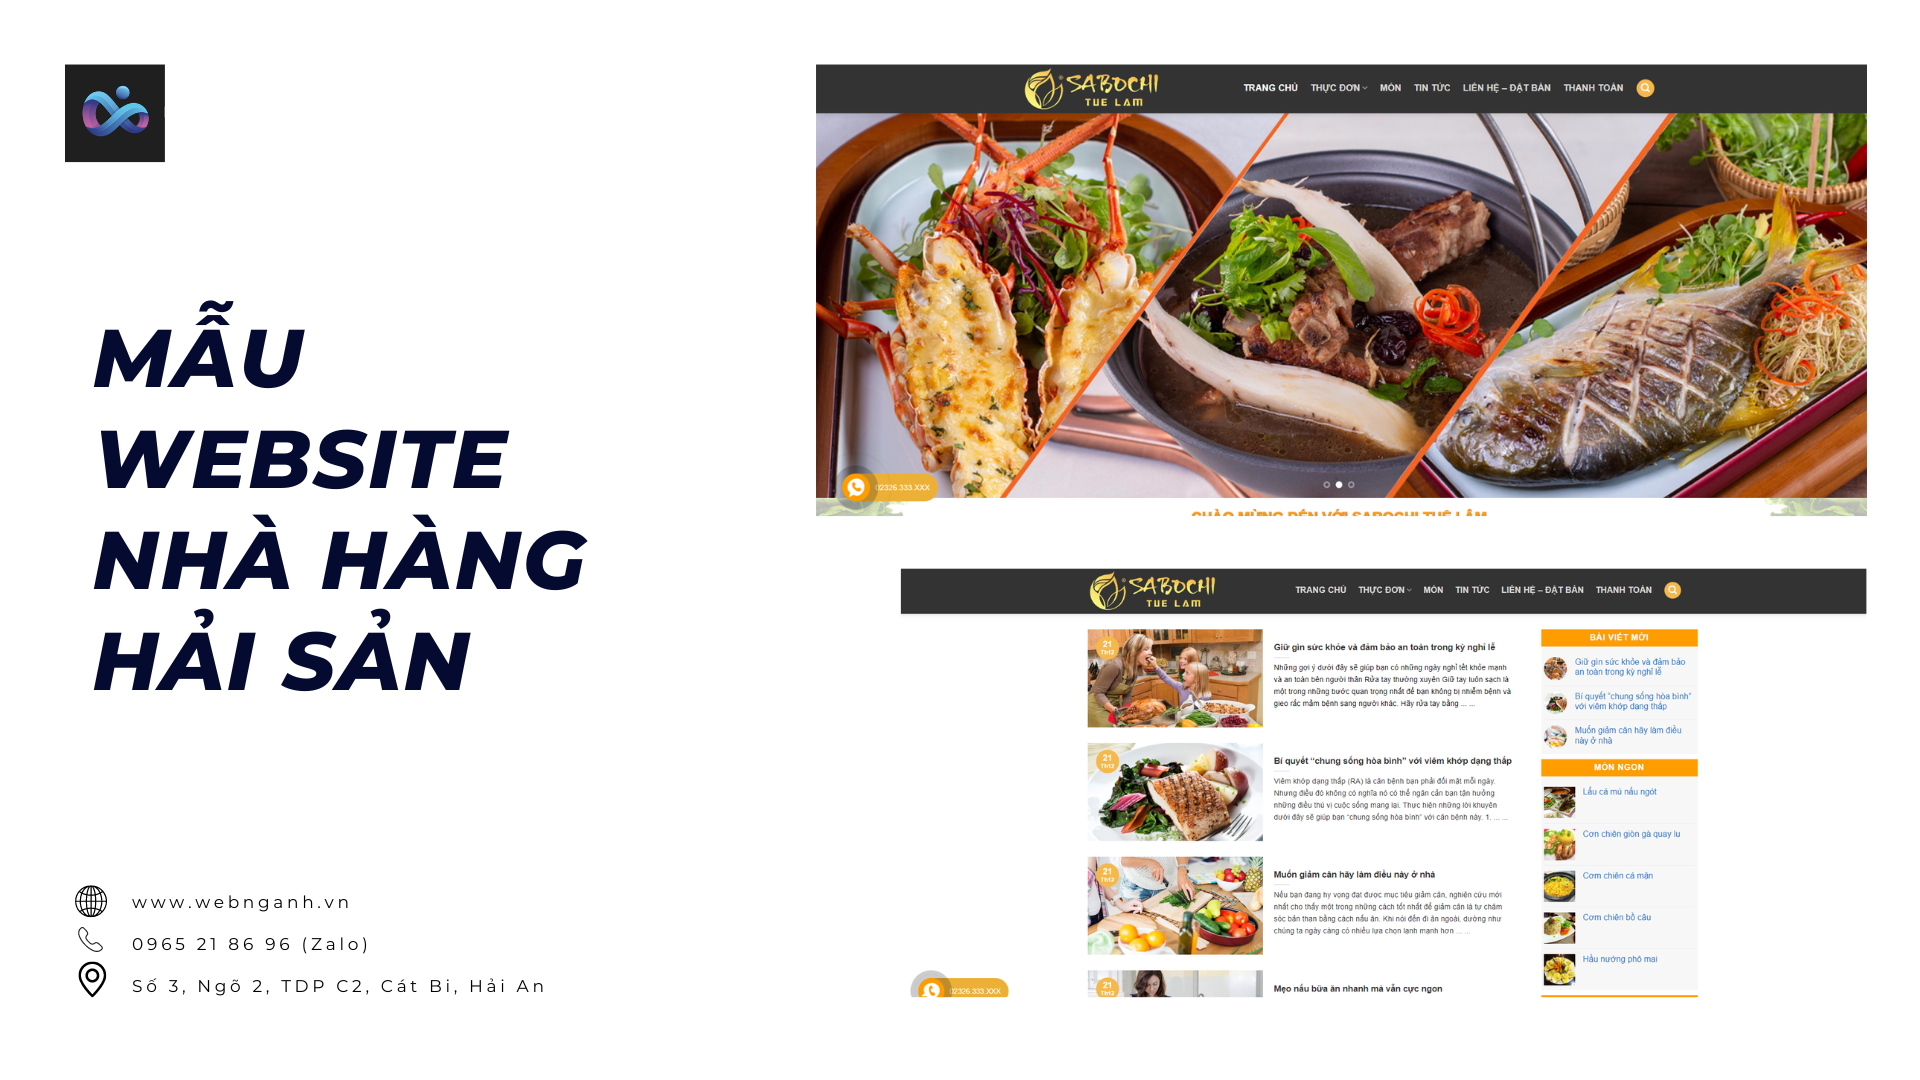 Mẫu website nhà hàng hải sản